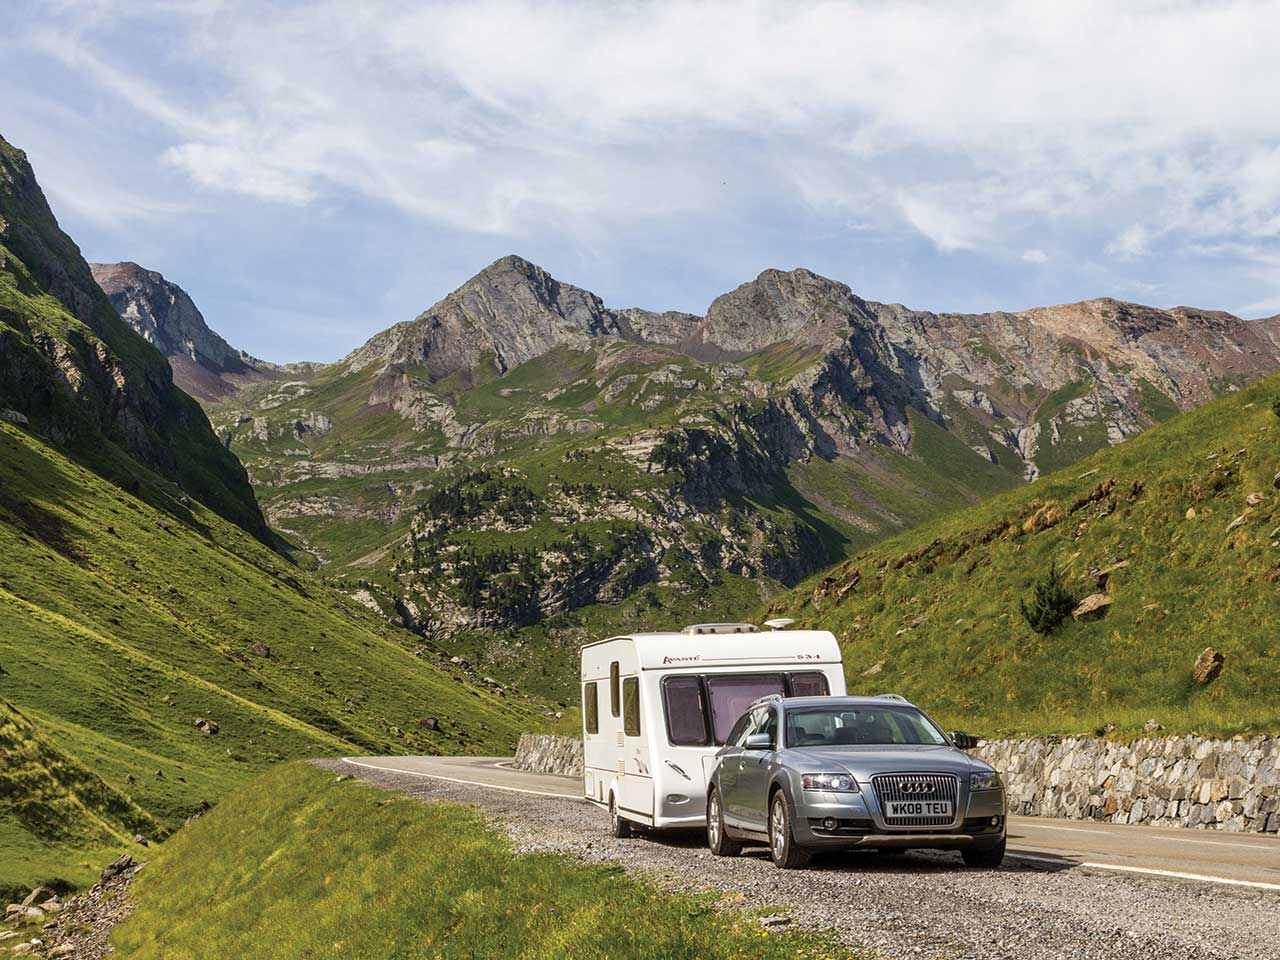 Car towing caravan through the mountains